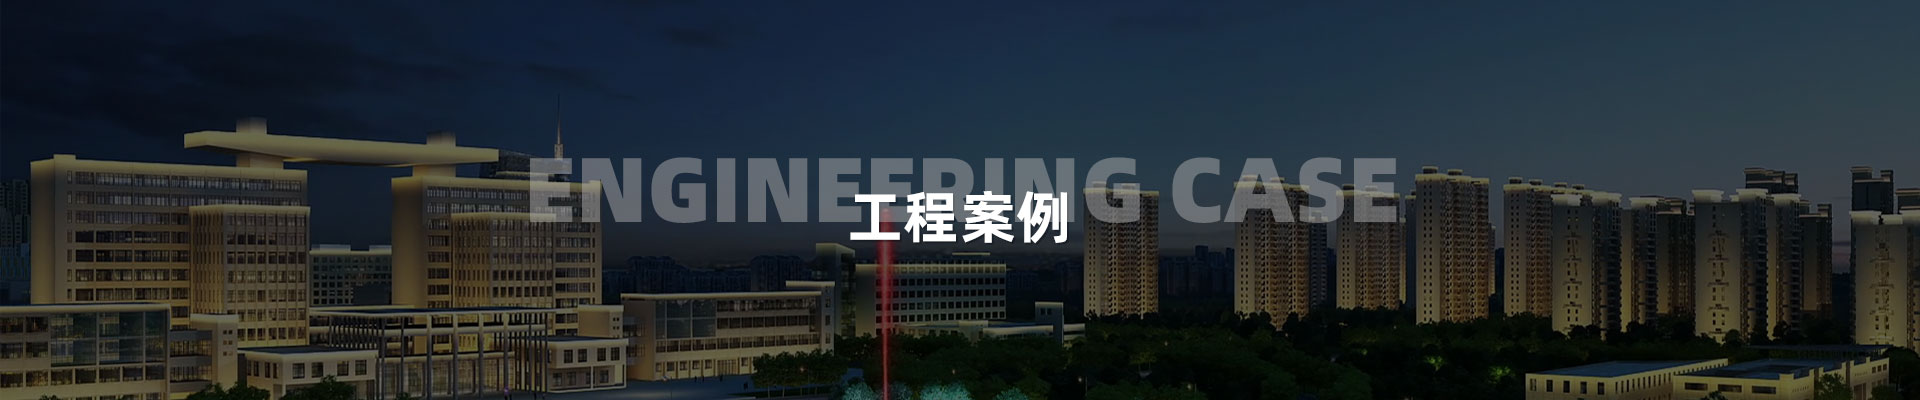 商業樓宇-深圳市中筑景觀亮化照明科技有限公司